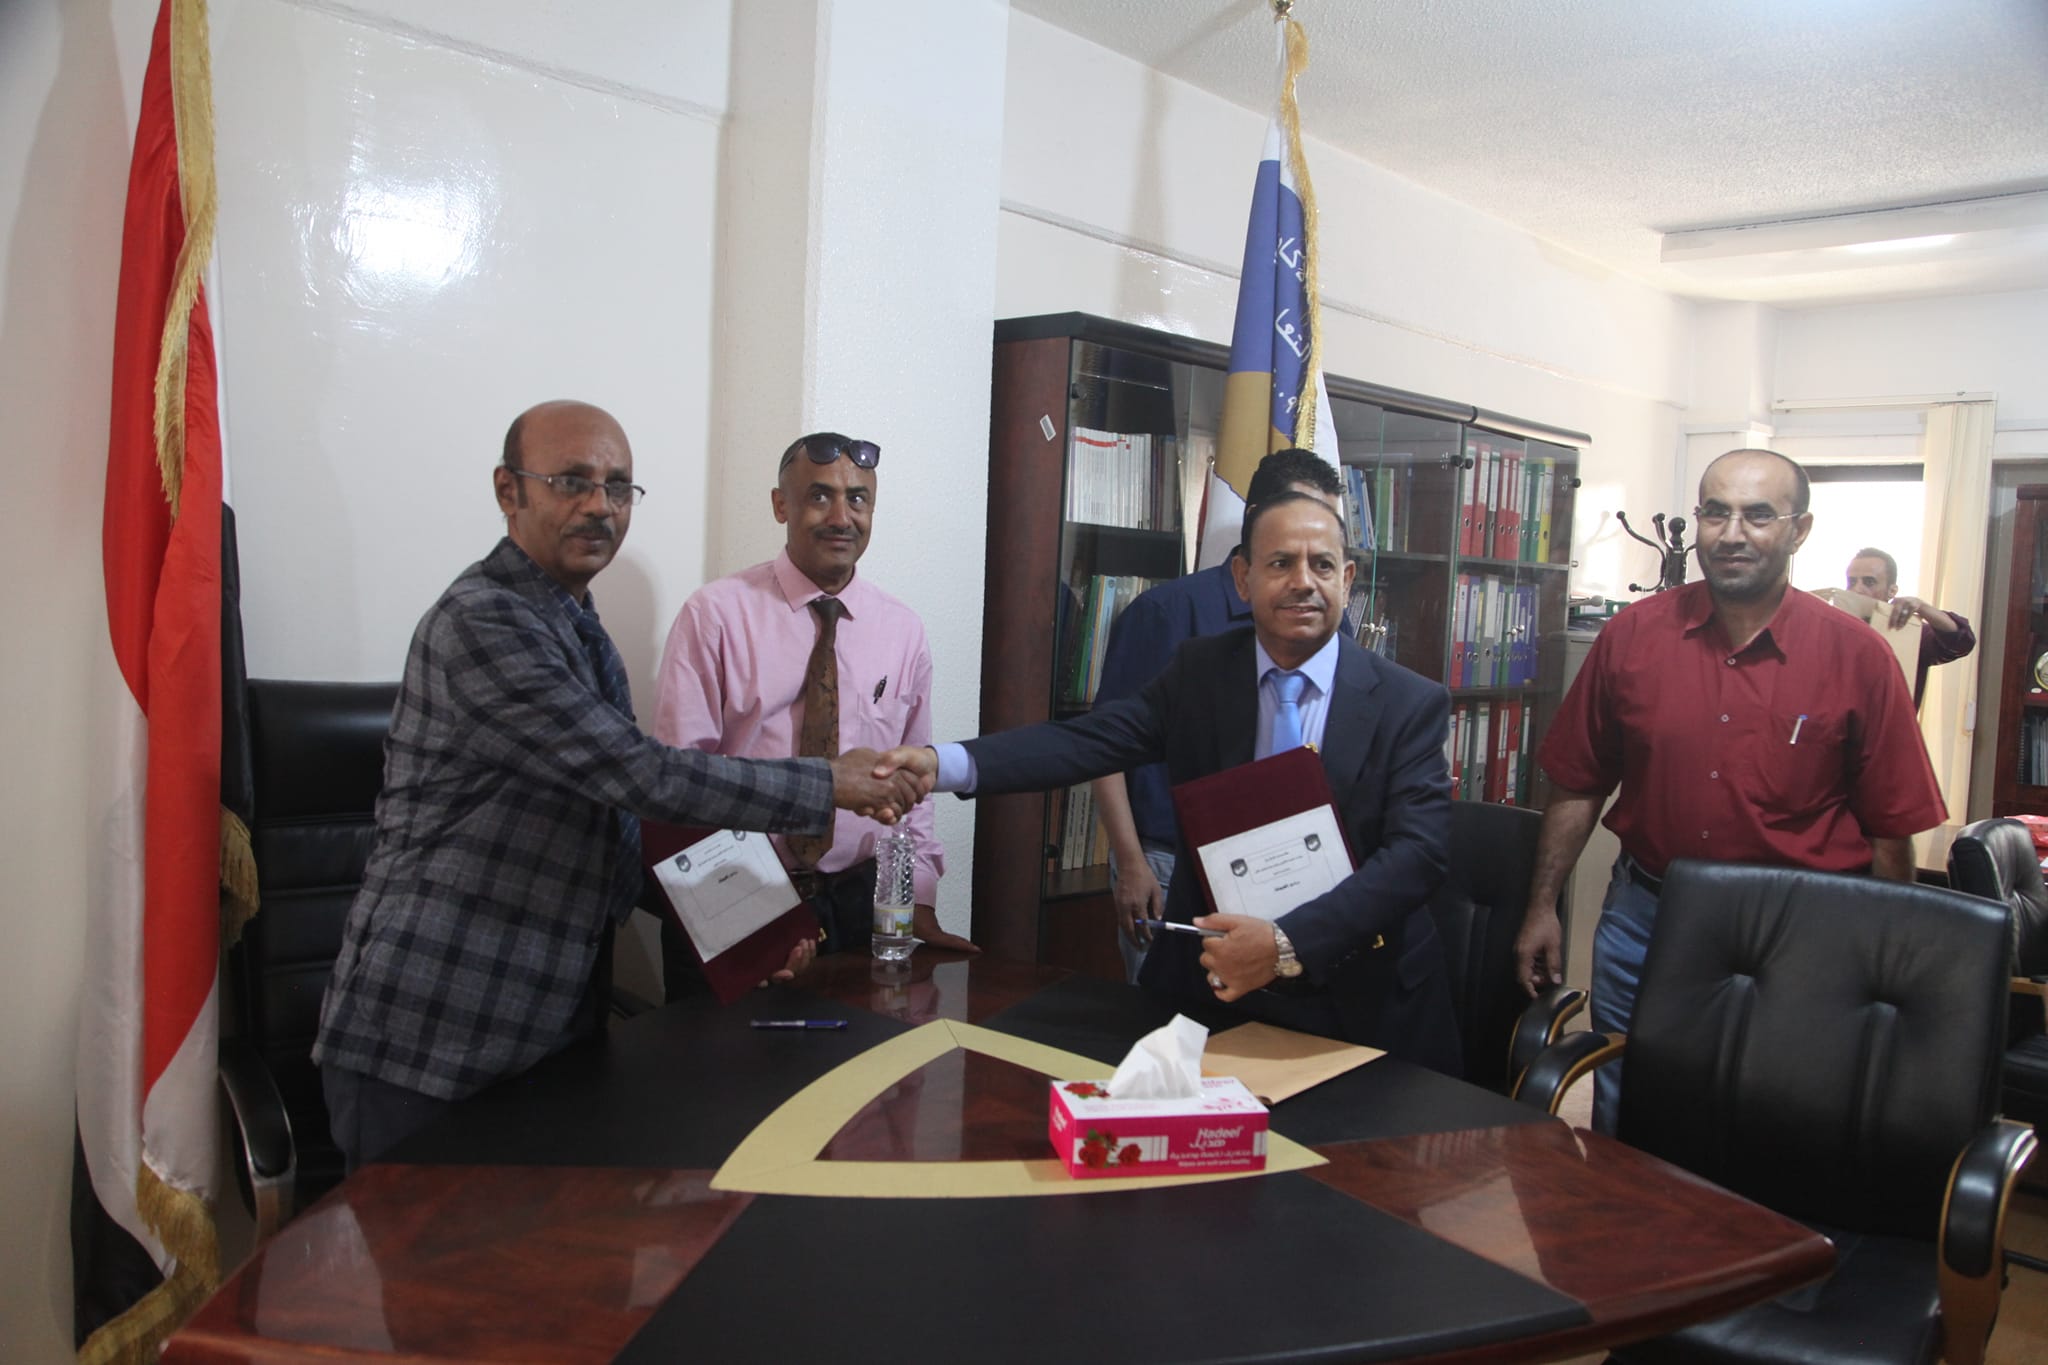 تسلّم مجلس الاعتماد الأكاديمي وضمان الجودة، طلب جامعة اليمن بشأن تقديم الدعم الفني والاستشاري، لضمان جودة برنامج الصيدلة